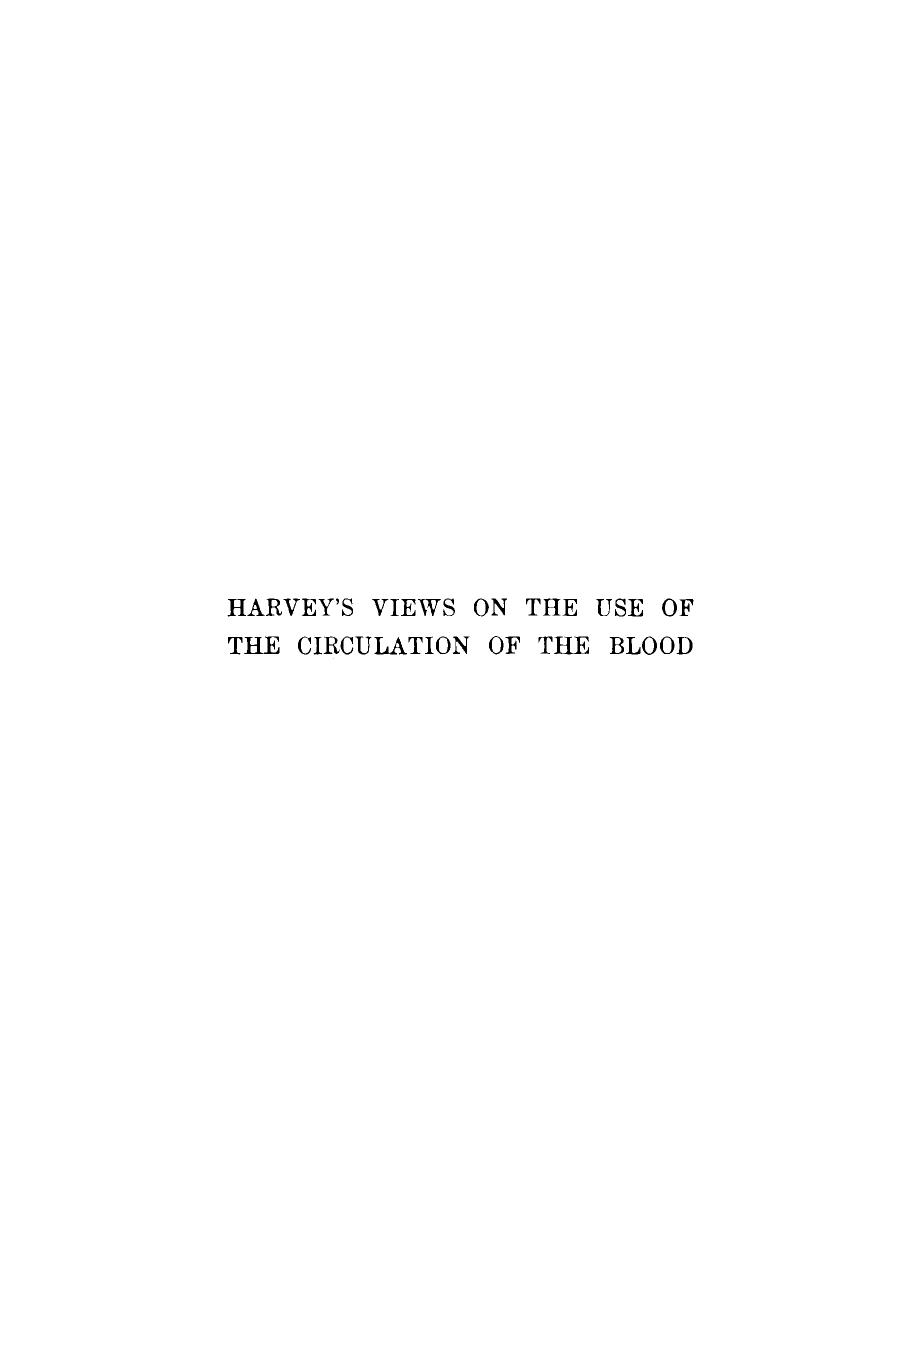 HarveyâS Views on the Use of the Circulation of the Blood by John G. Curtis